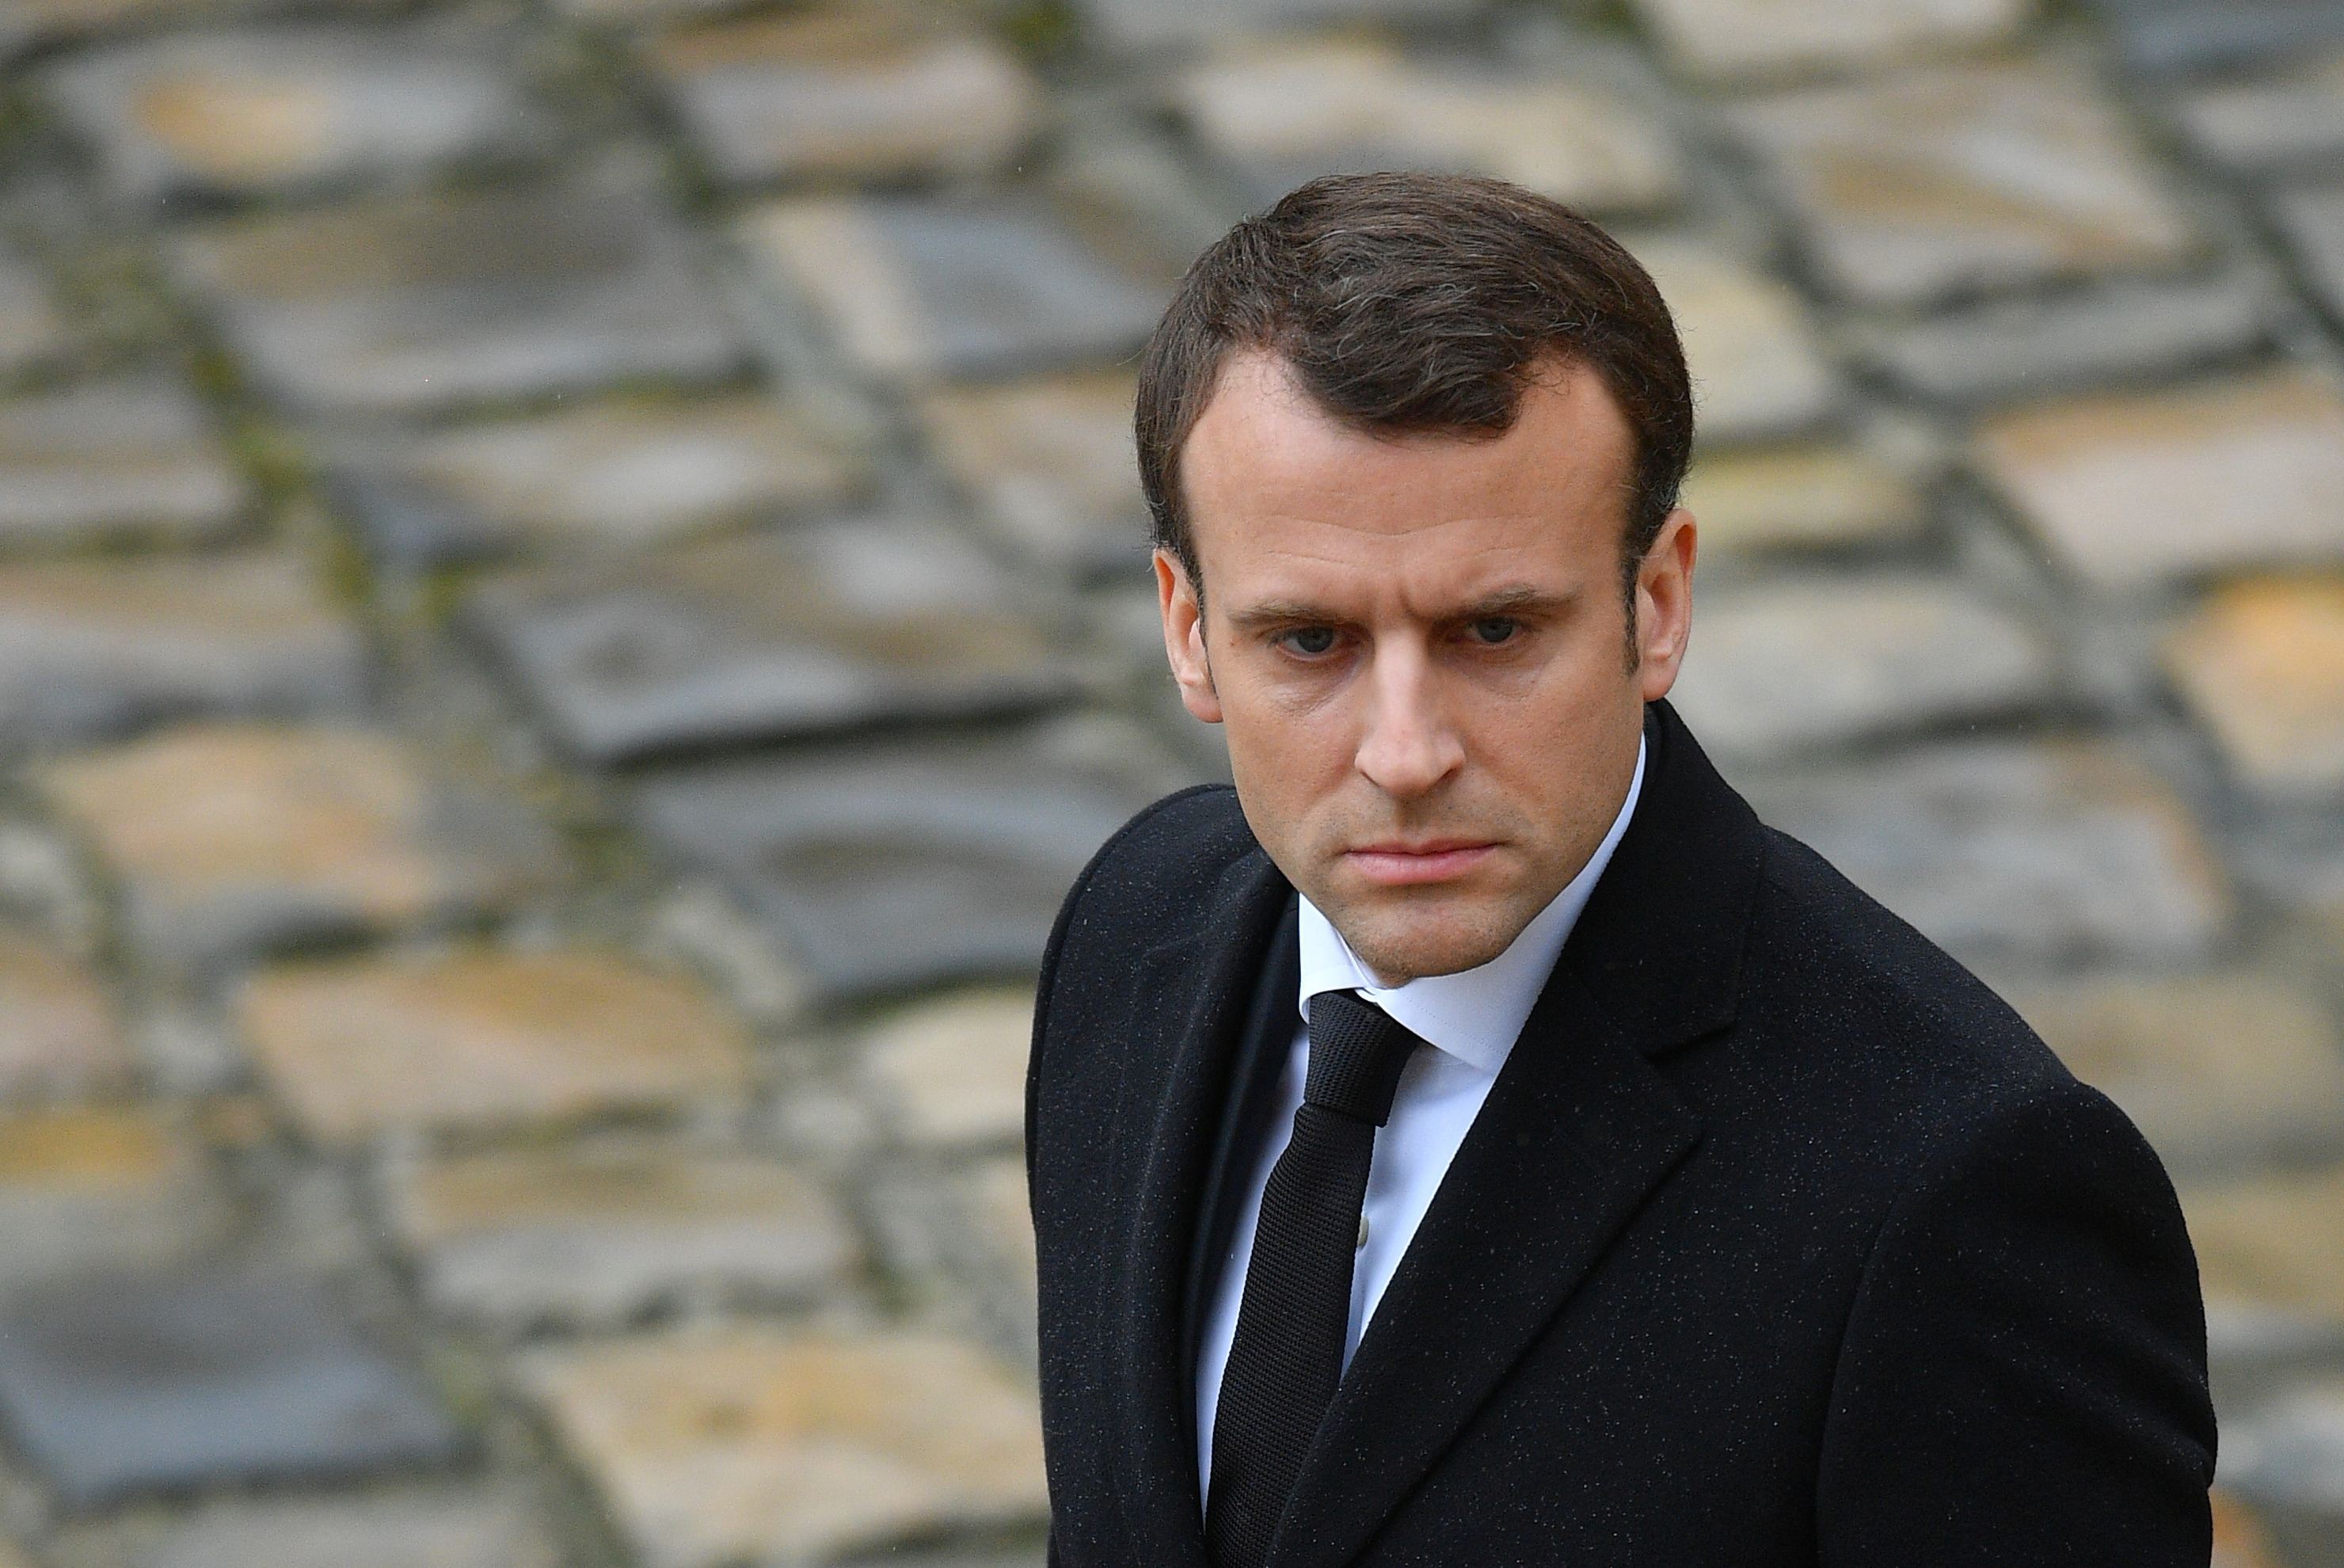 Preşedintele francez Emmanuel Macron condamnă încălcarea prevederilor Acordului Nuclear de către Iran